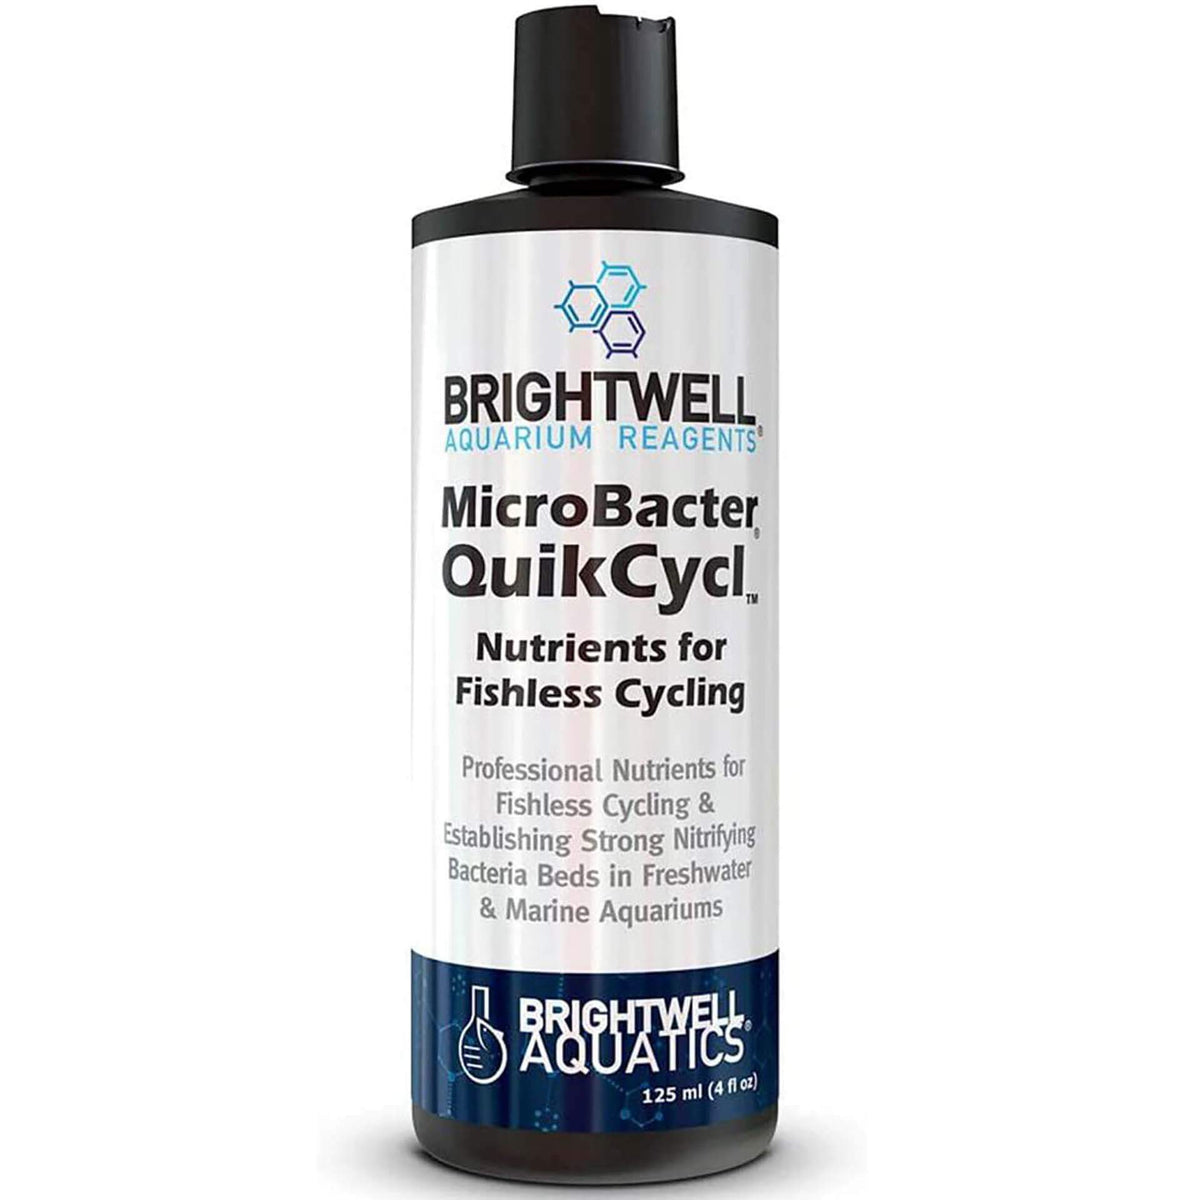 Brightwell Aquatics MicroBacter QuikCycl 125ml